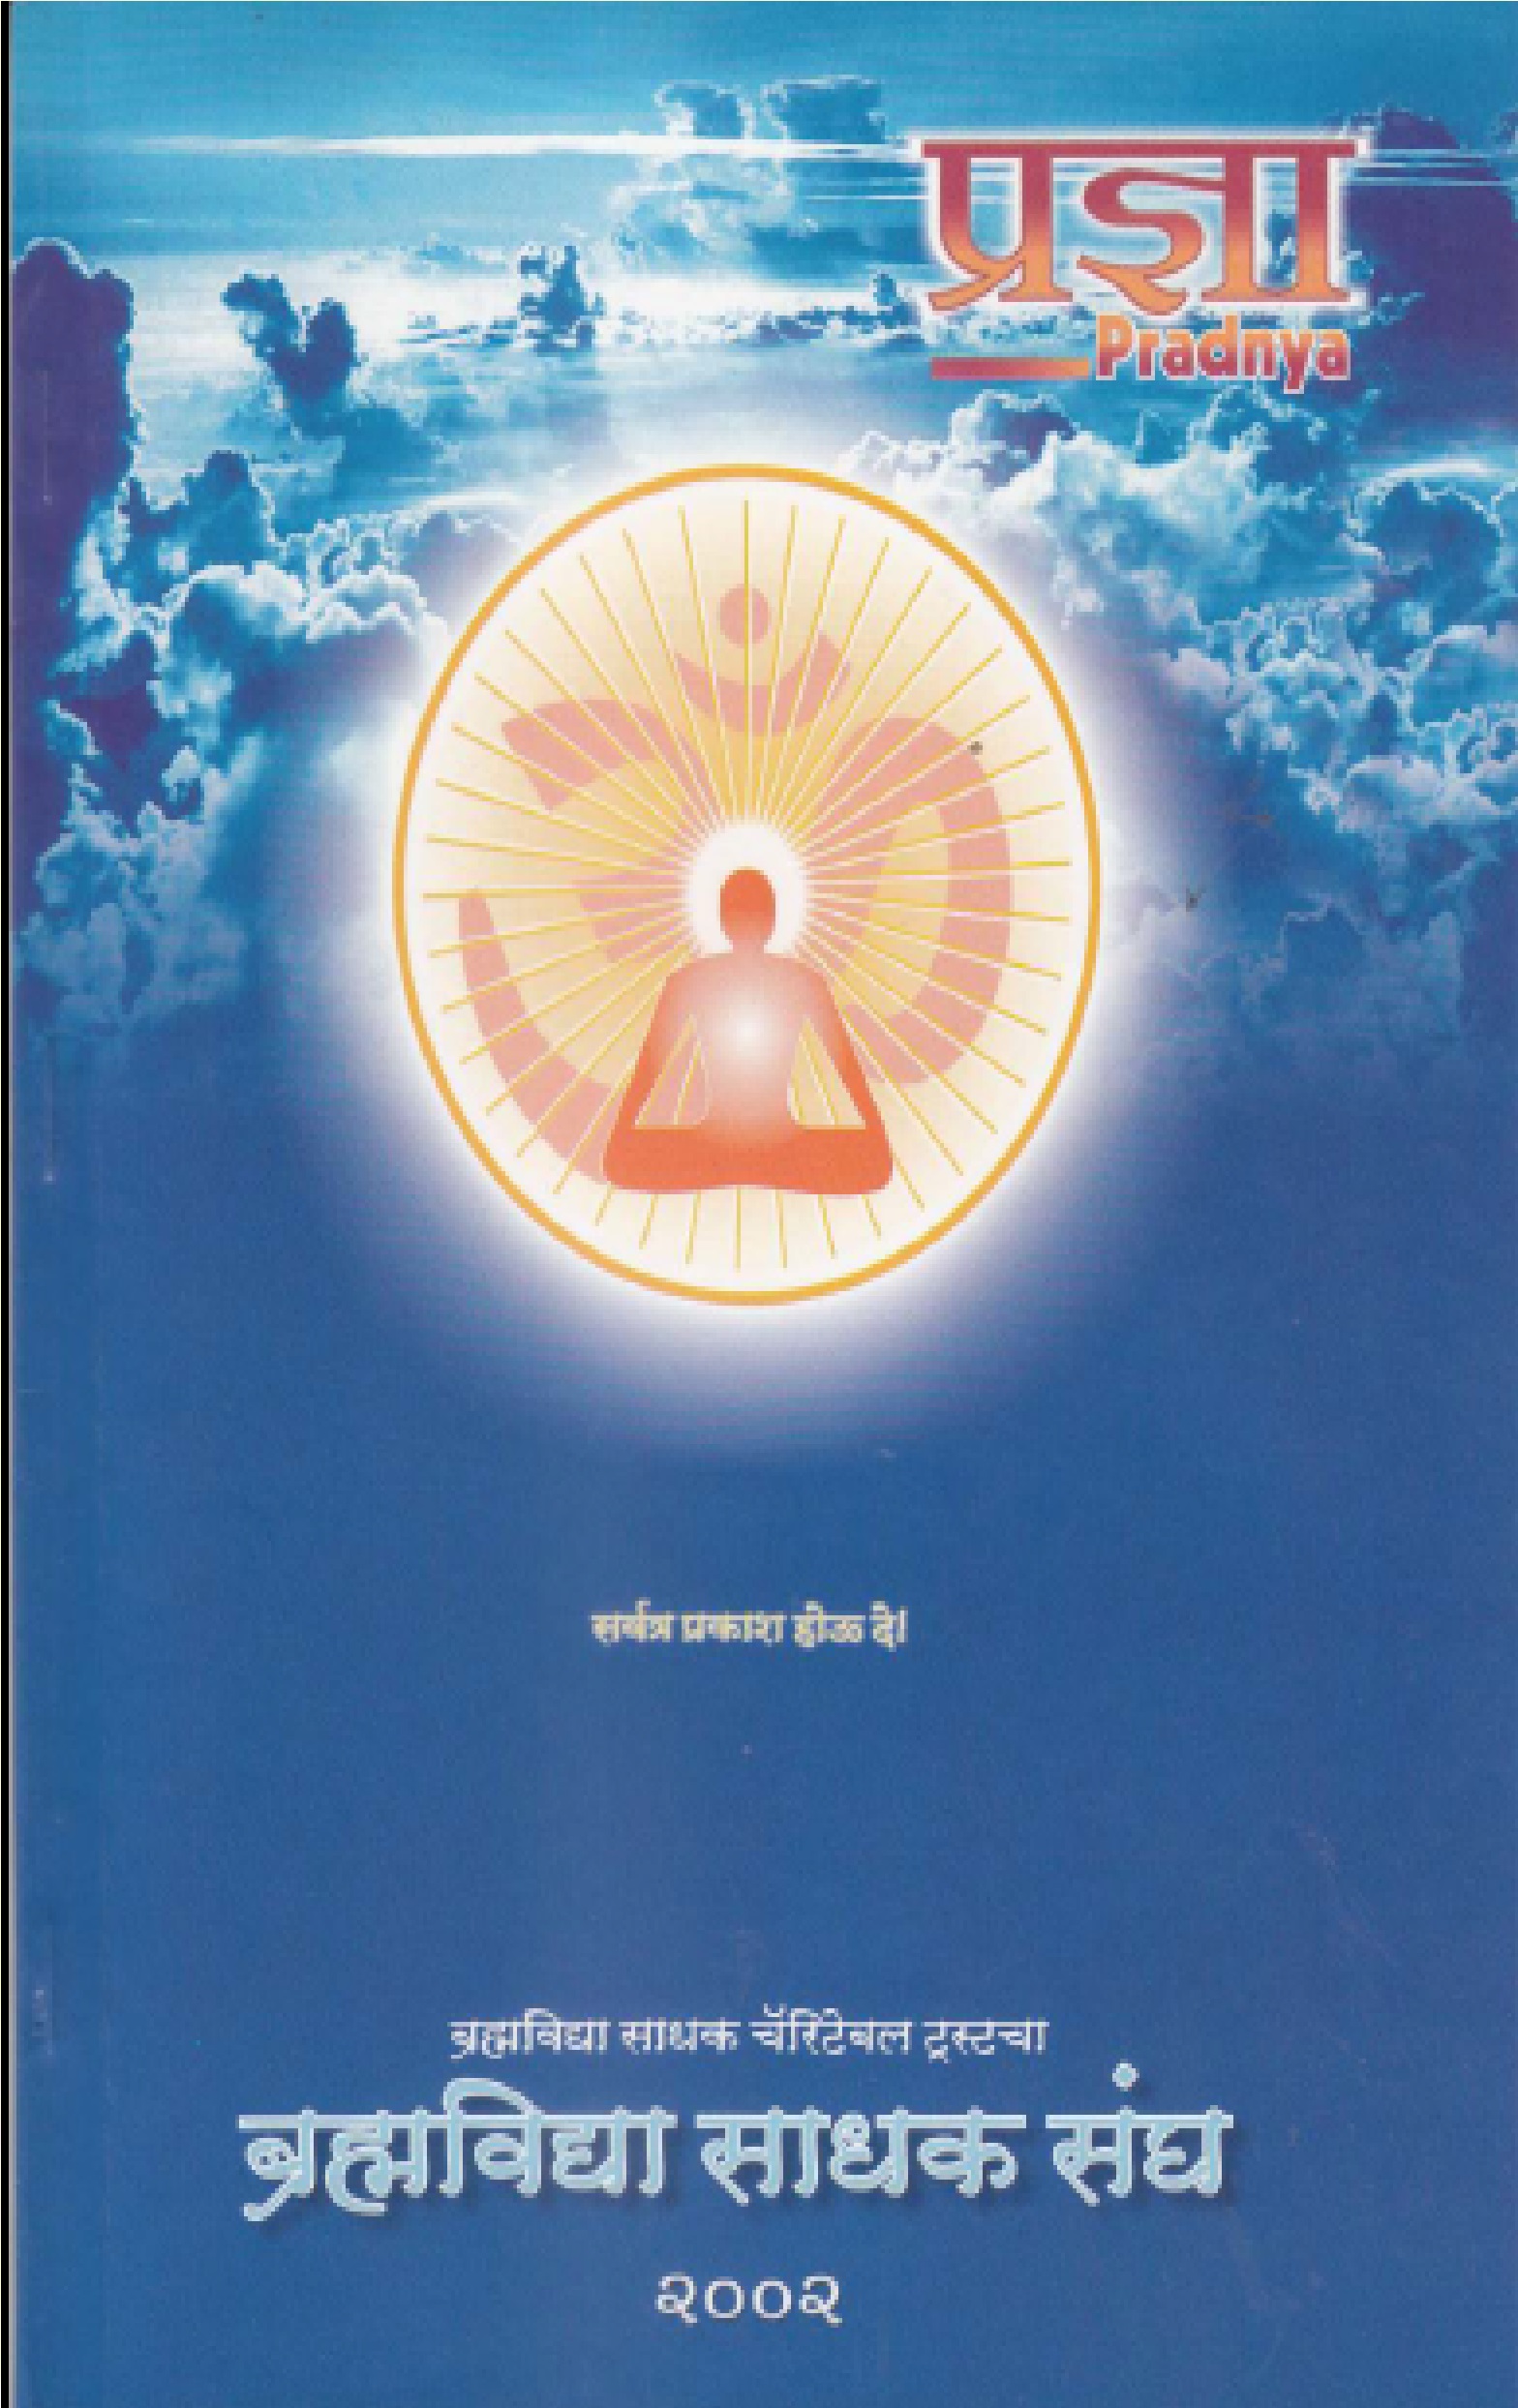 Pradnya Marathi 2002